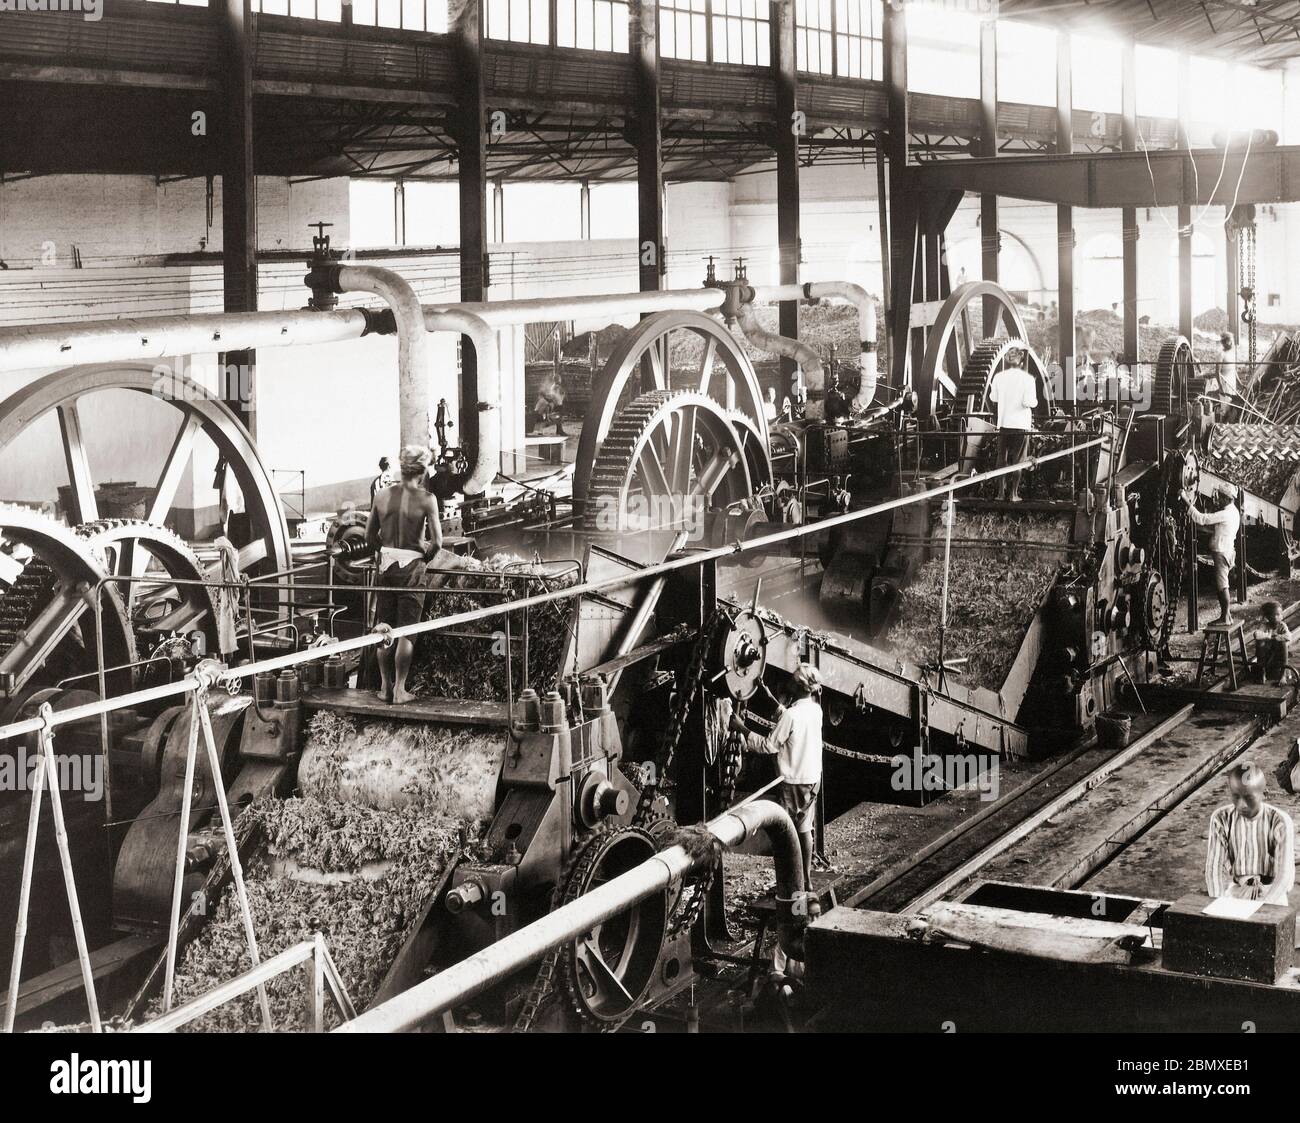 Macchine per la lavorazione della canna da zucchero nelle Indie Orientali olandesi (Indonesia moderna) fine del 19 ° secolo. Dopo una fotografia possibilmente dal fotografo turco Ohannes Kurkdjian, 1851 - 1903. Foto Stock